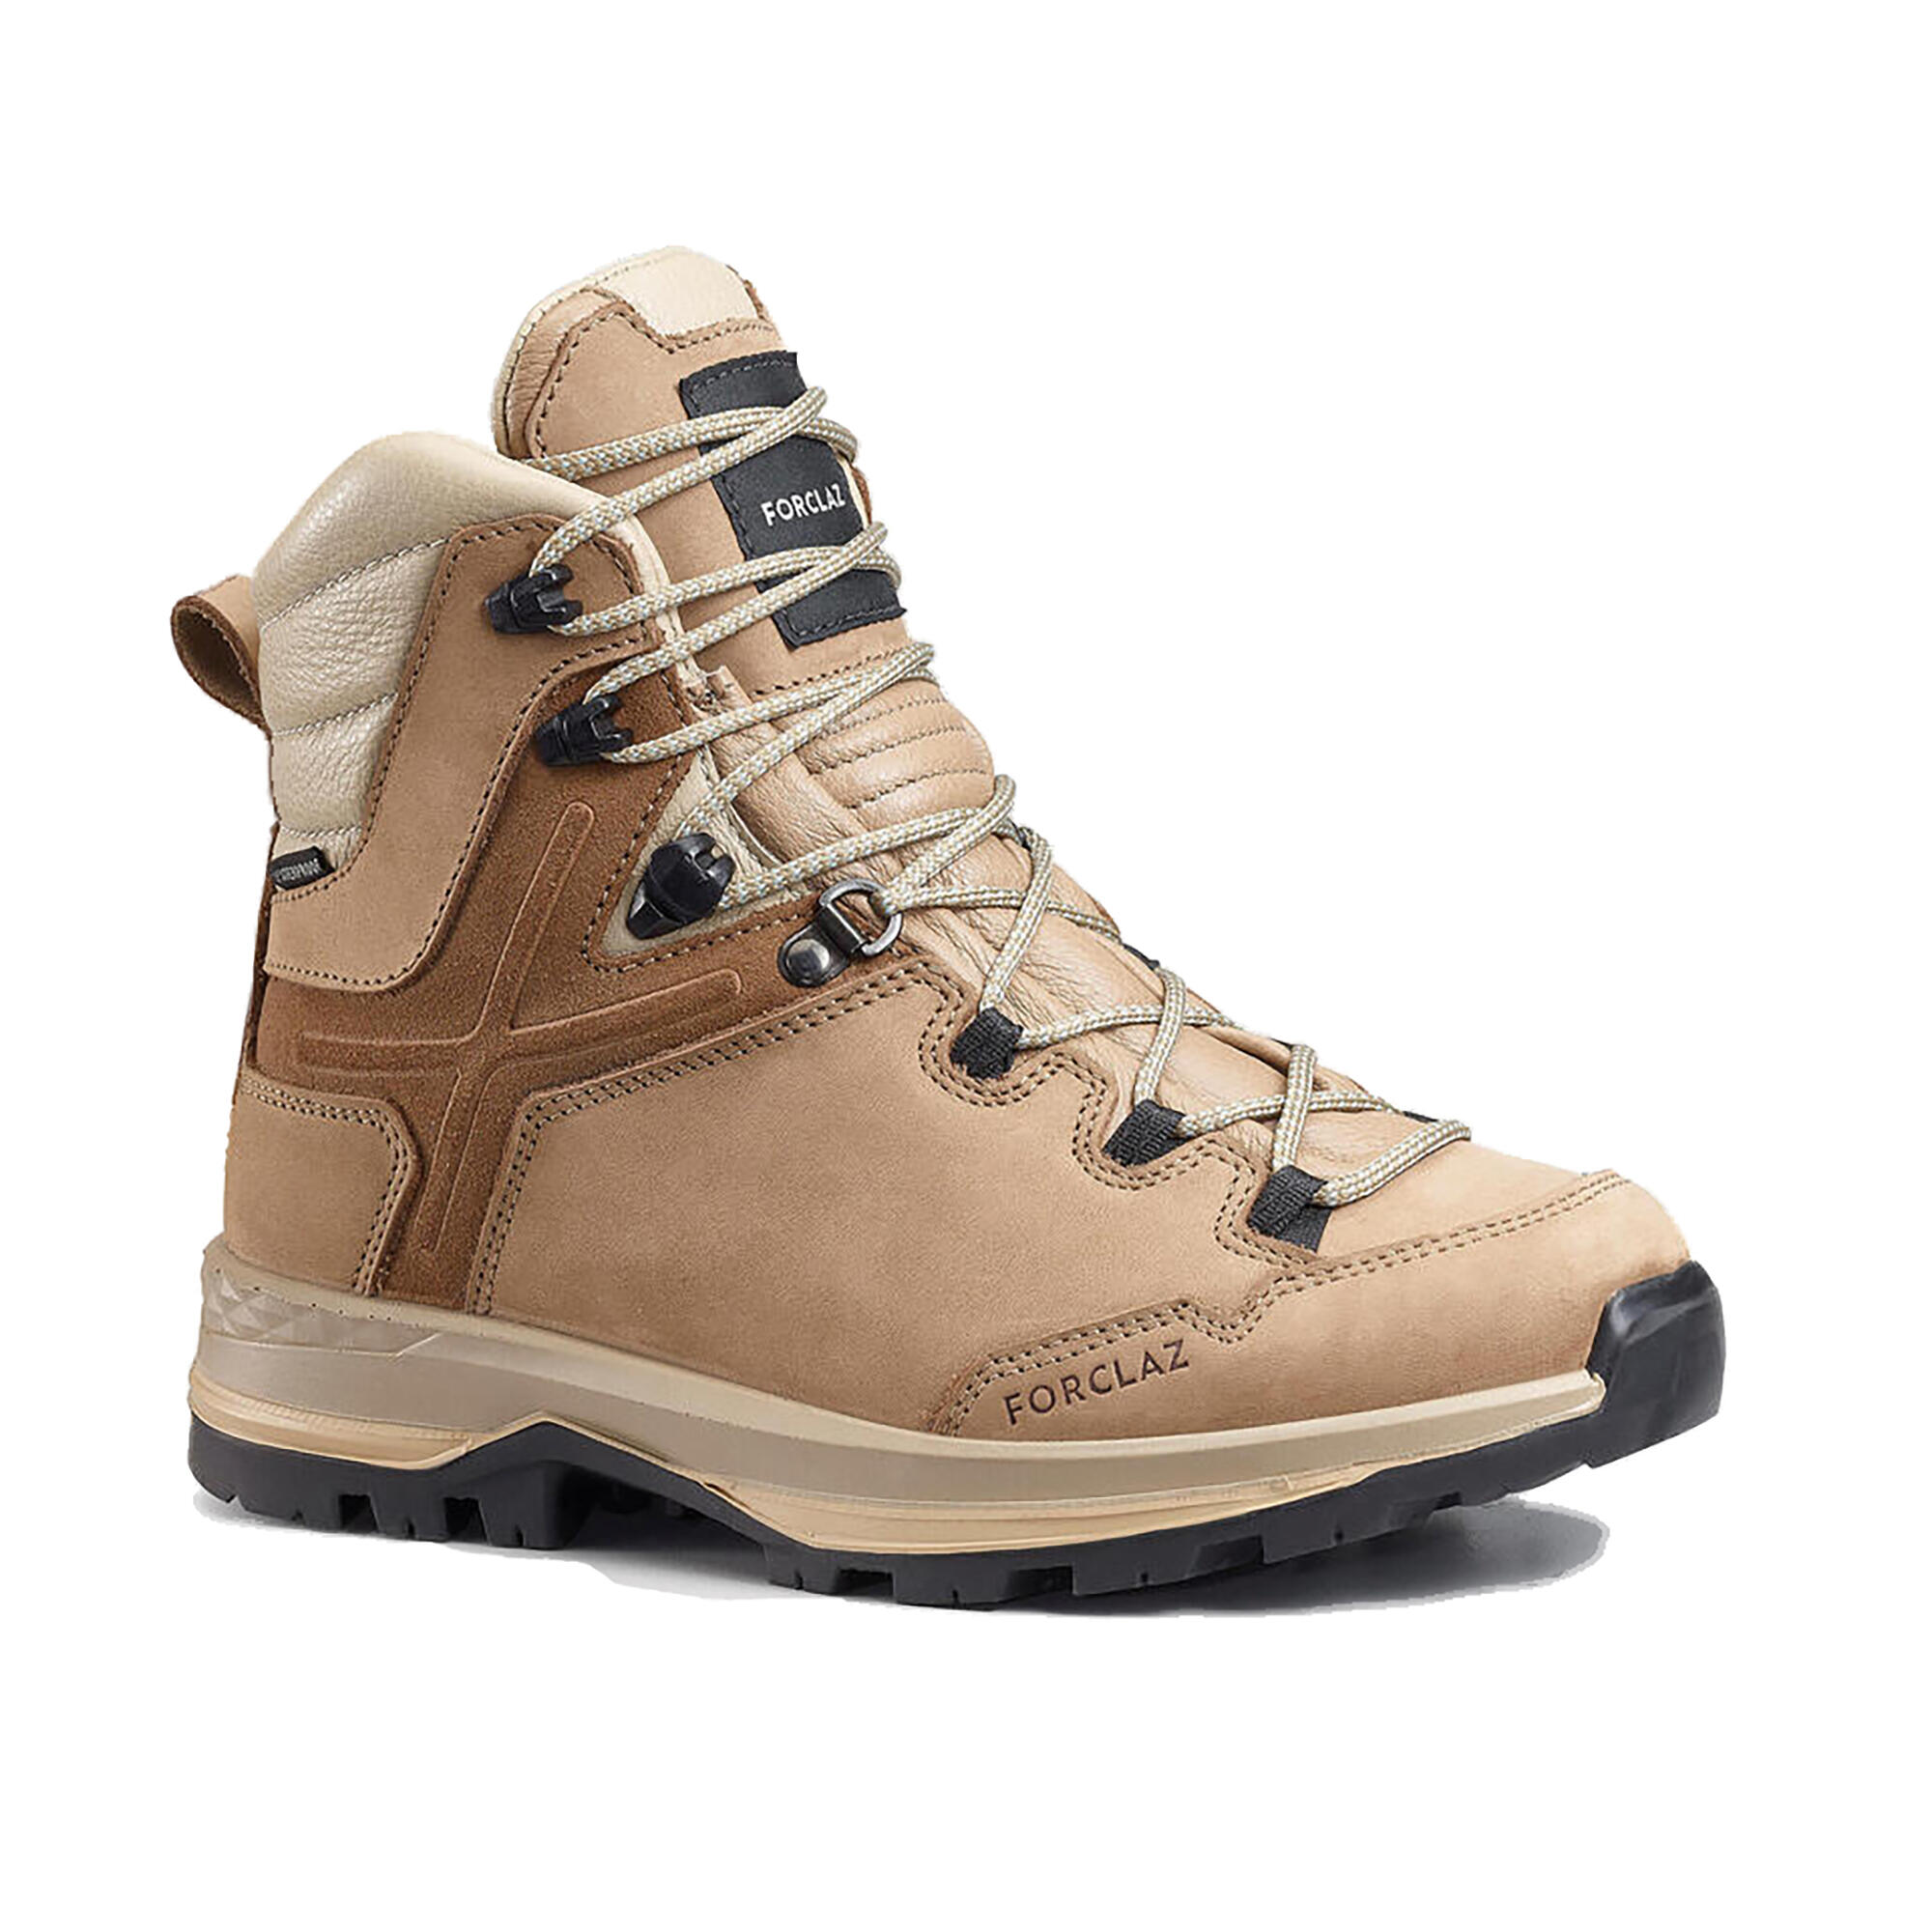 chaussures trekking cuir imperméables - mt500 - femme haute - forclaz